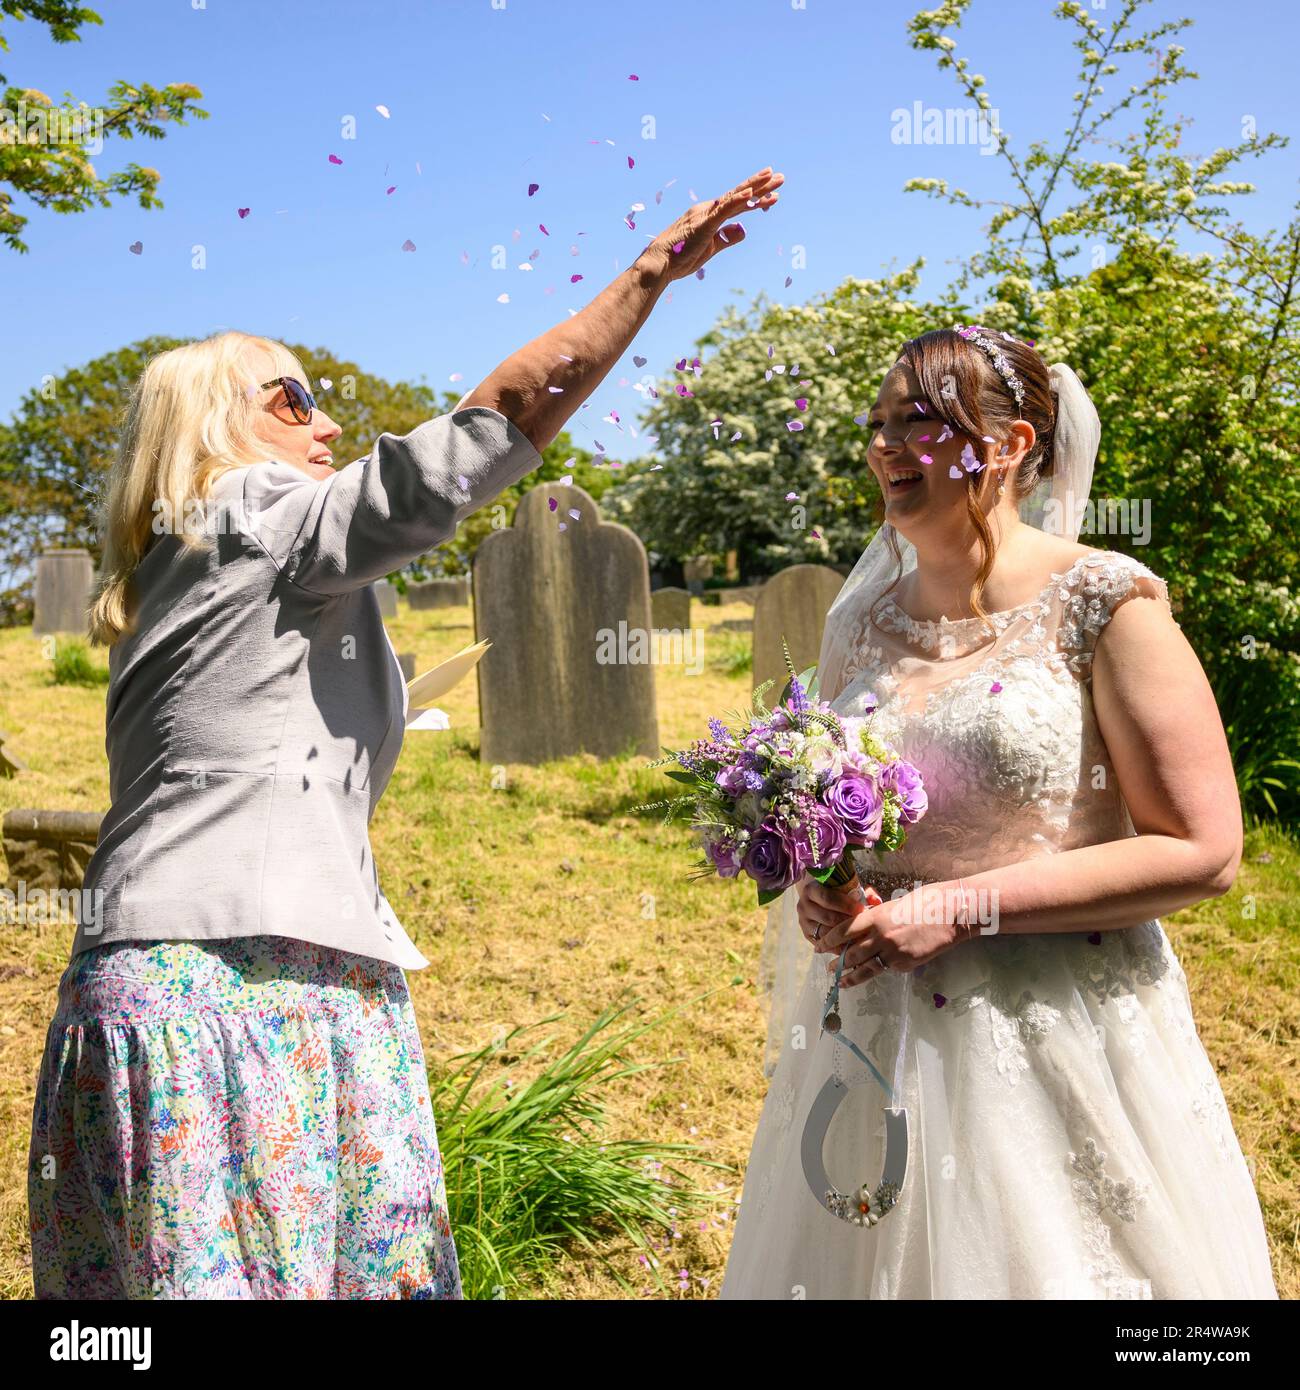 Mujer lanzando confeti sobre una novia en un vestido de novia el día de la boda Foto de stock